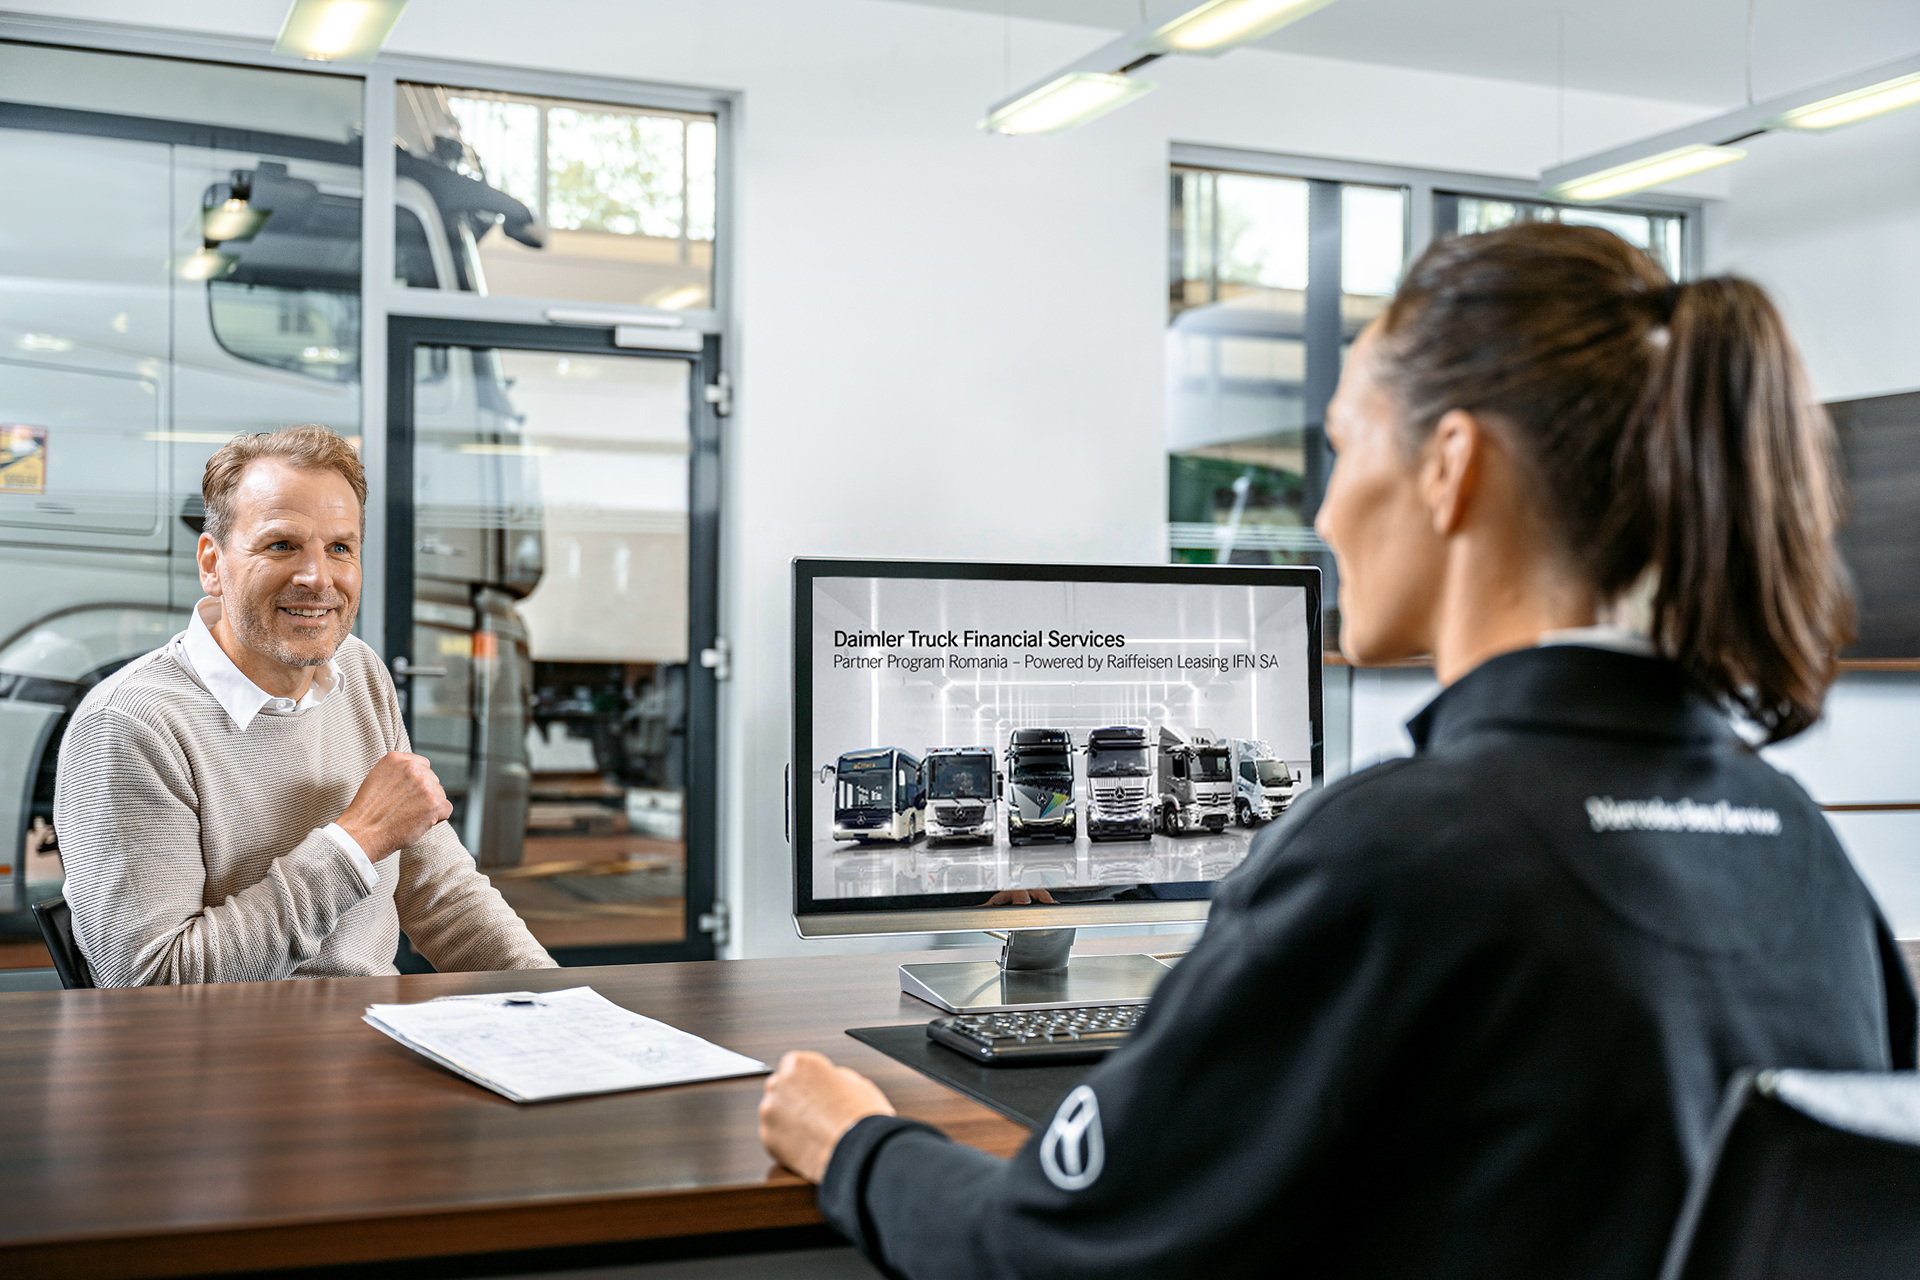 Daimler Truck Financial Services startet Kooperation mit Raiffeisen Leasing in Rumänien